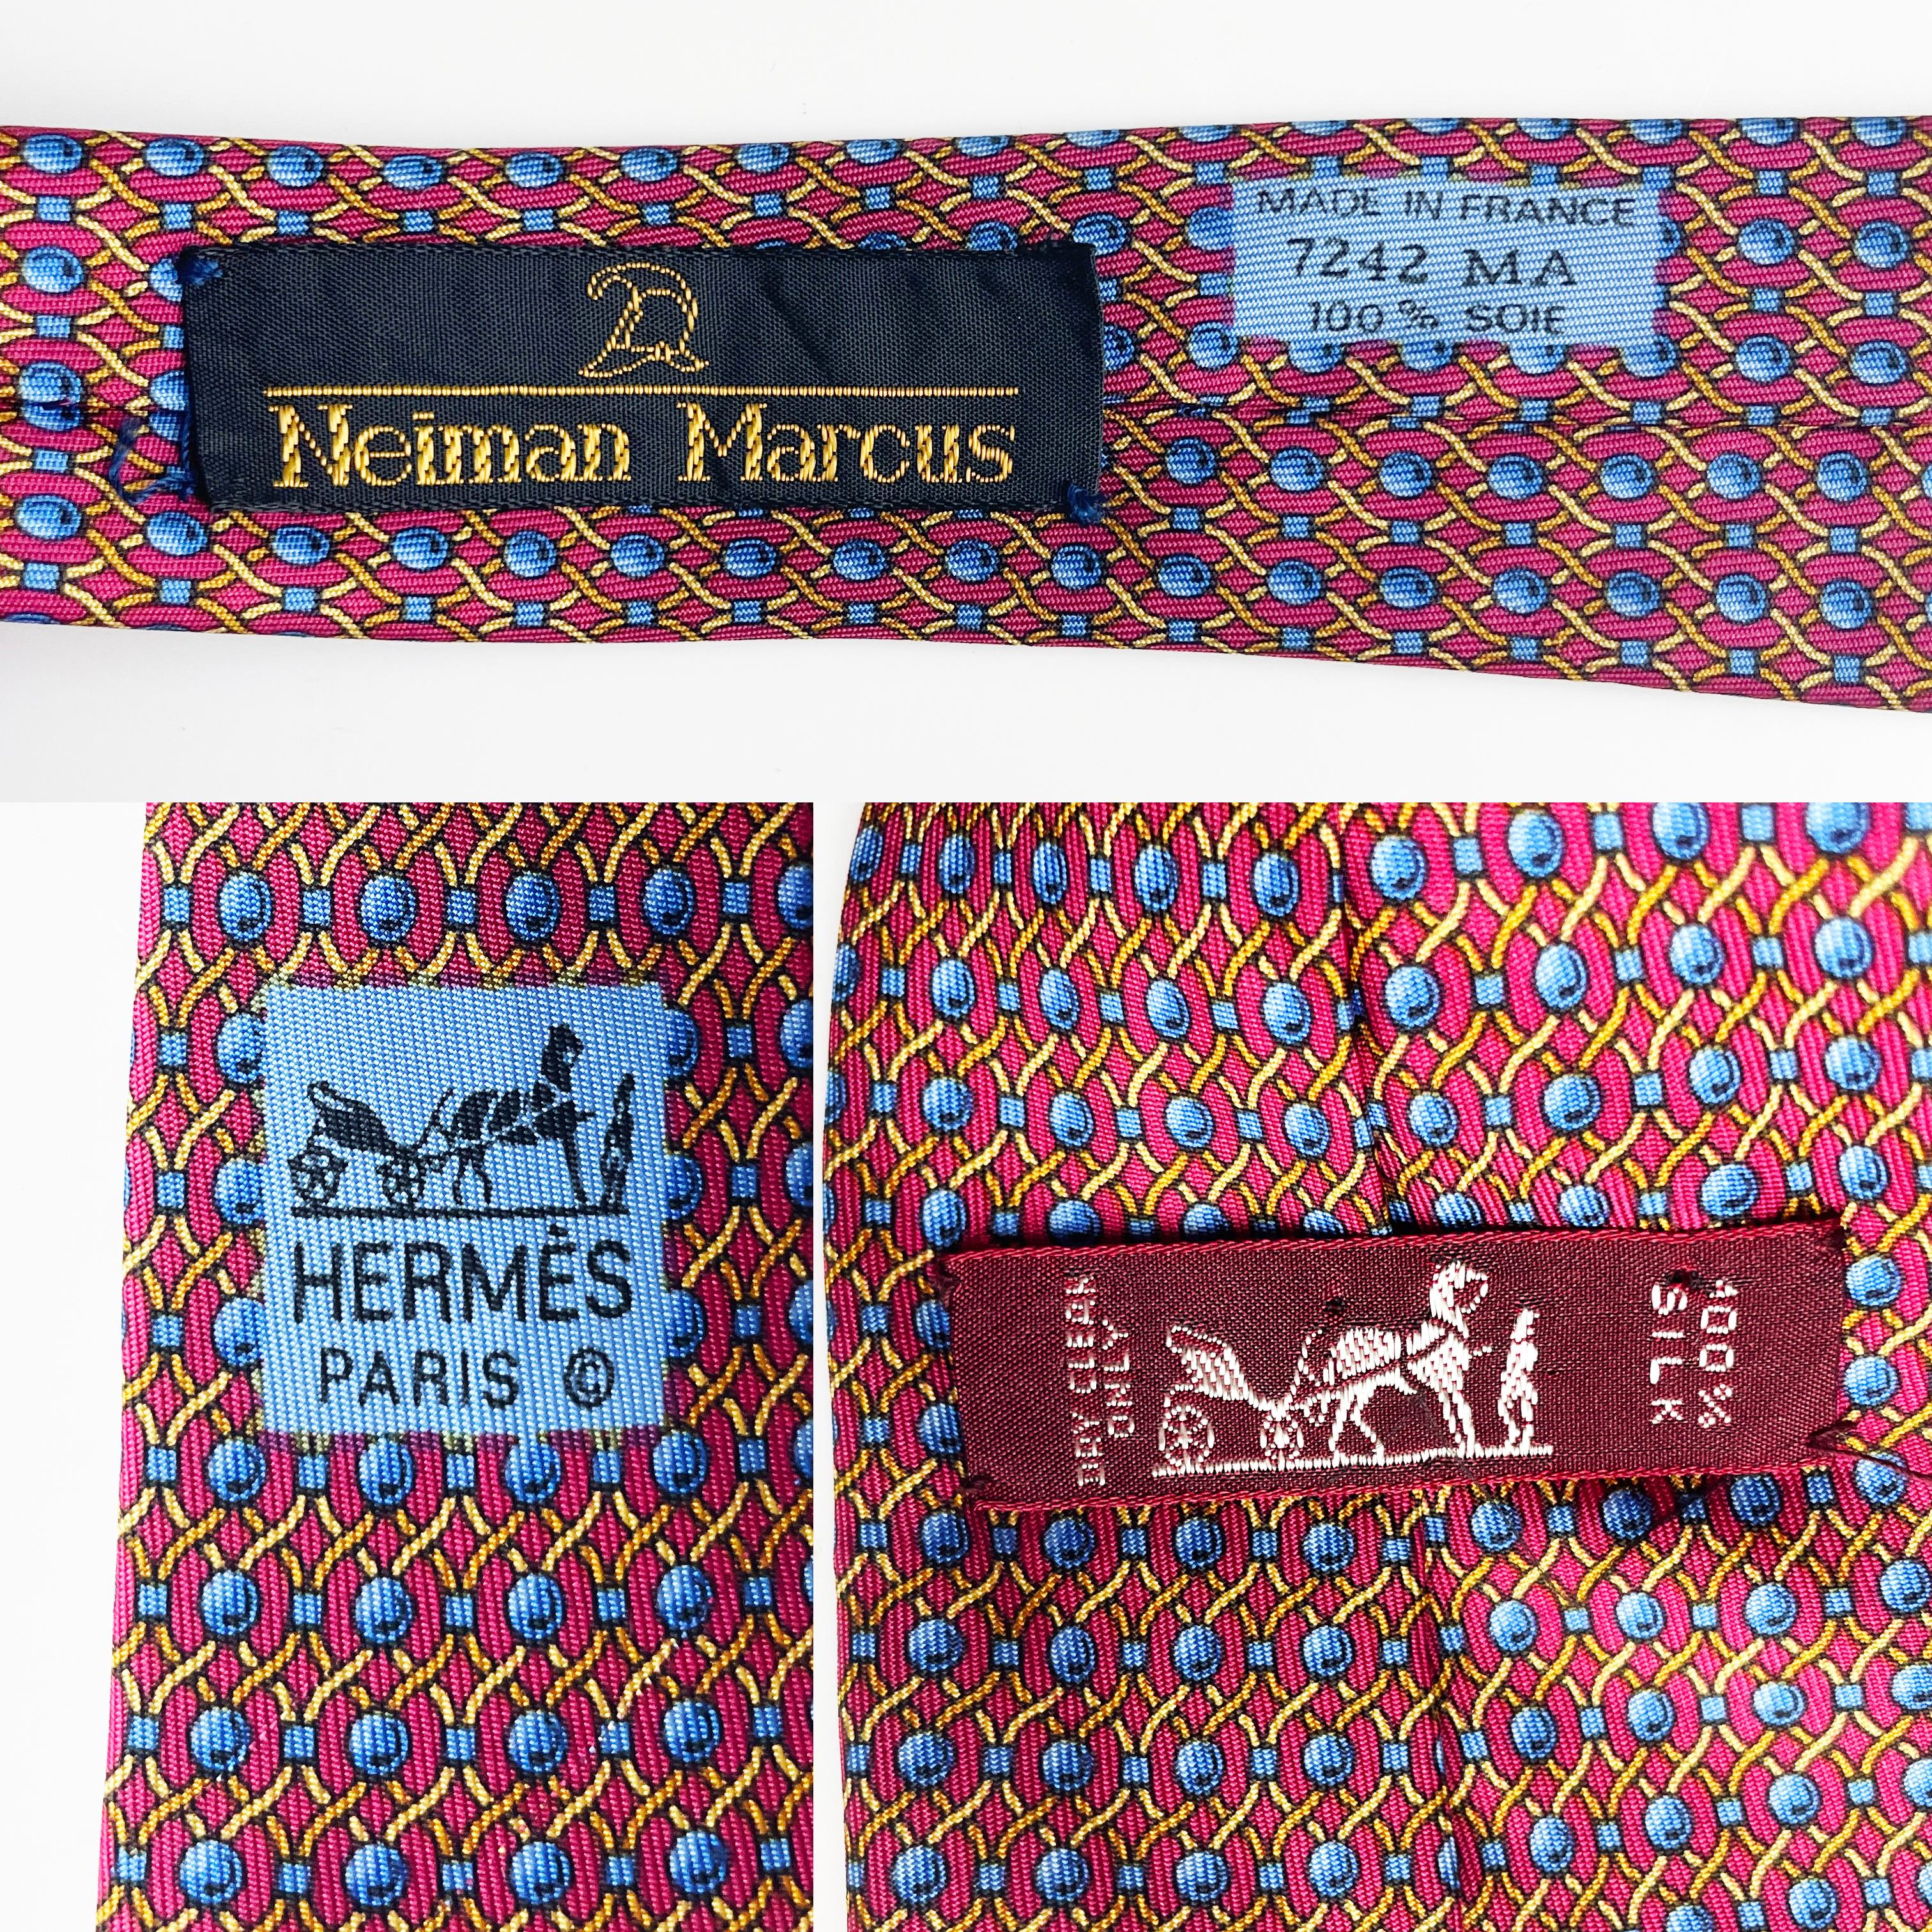 Cravate Hermès en soie imprimée corde abstraite 7242 MA 1990 3